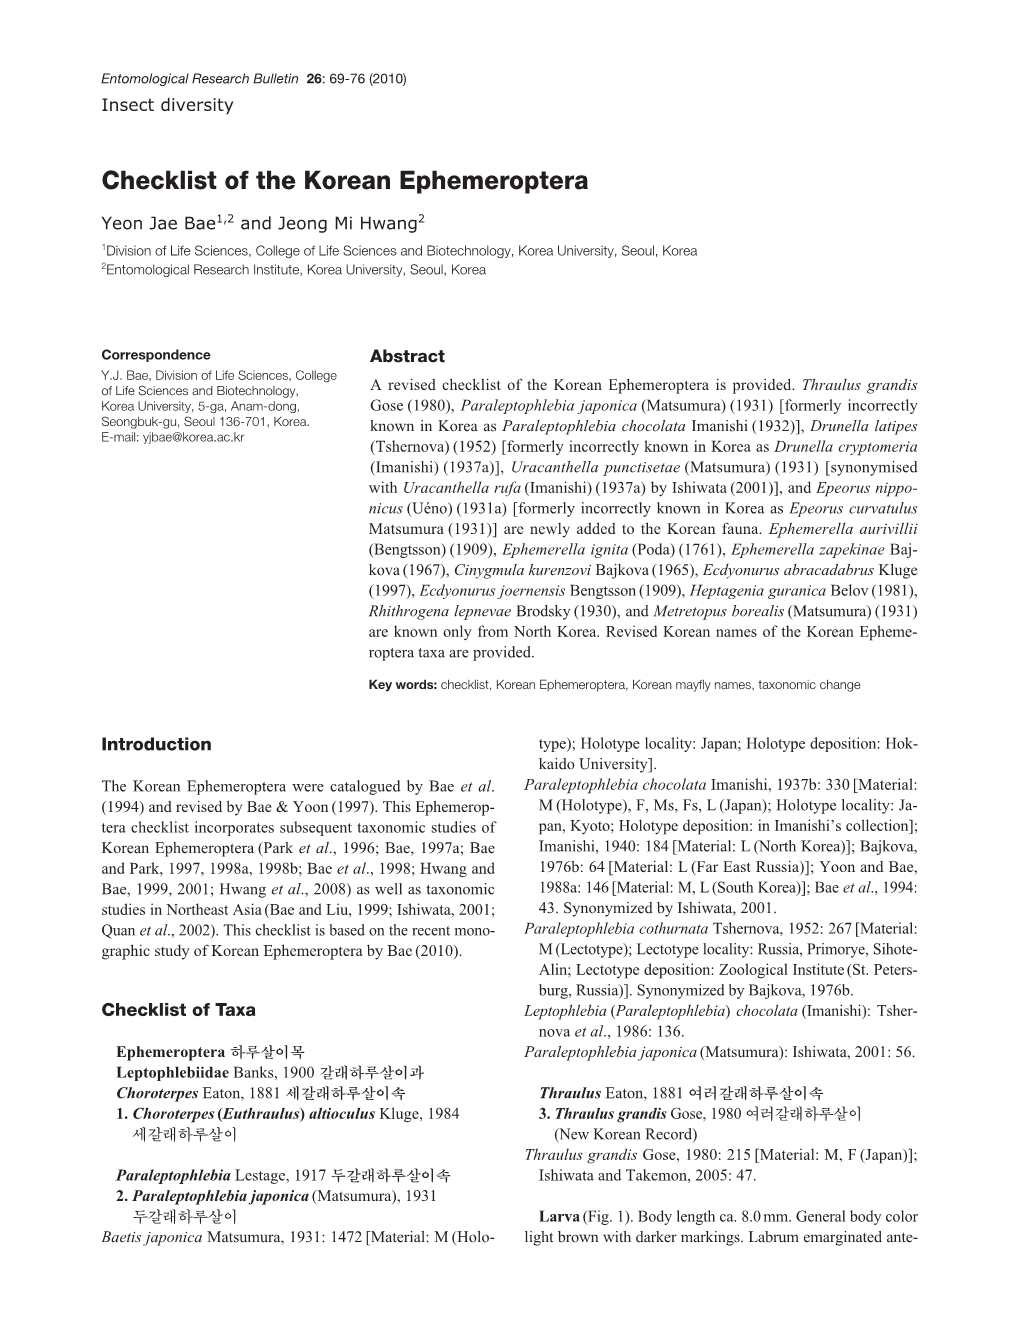 Checklist of the Korean Ephemeroptera